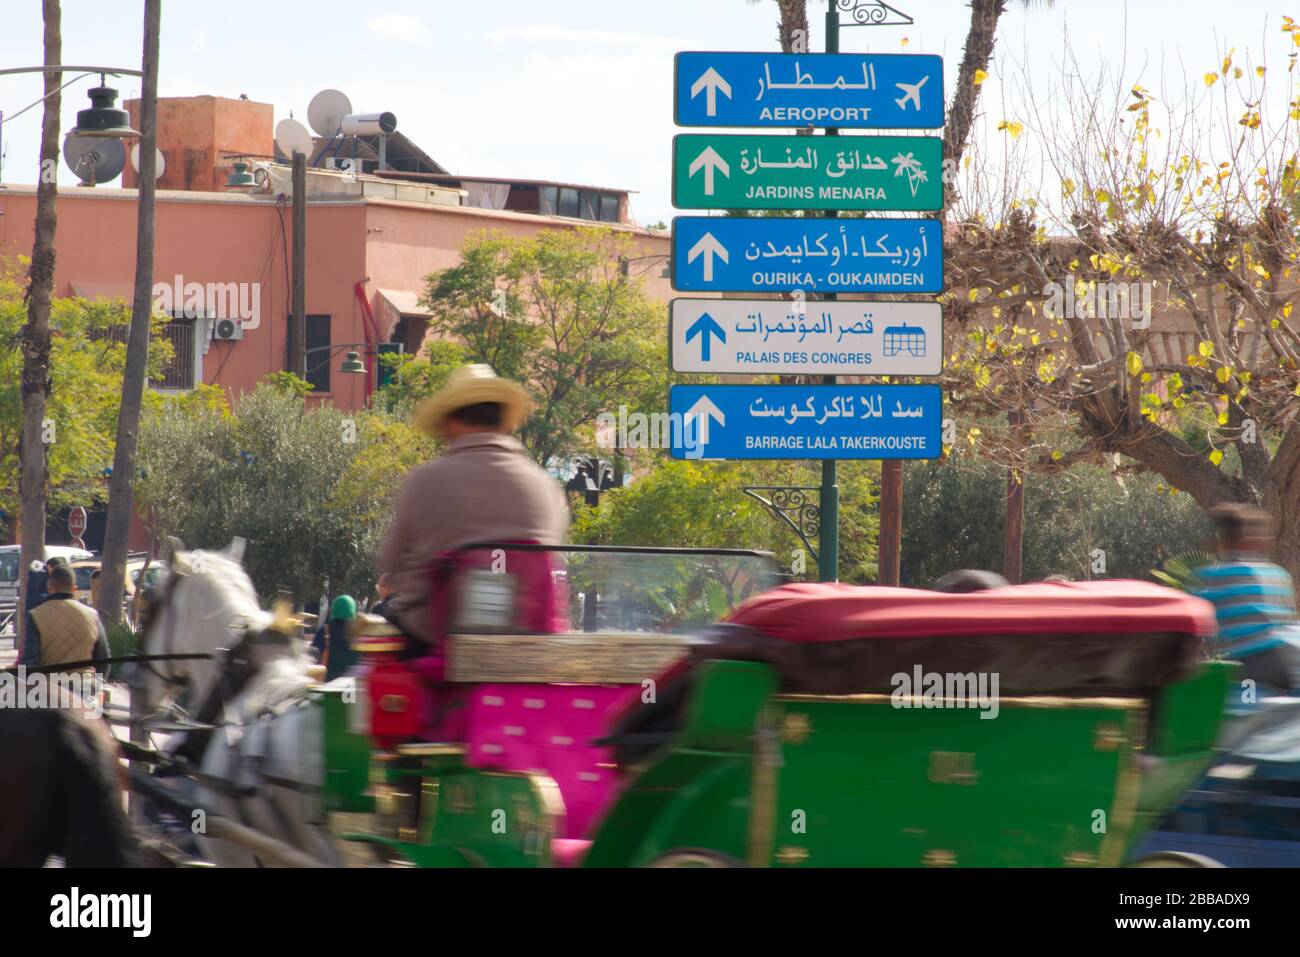 Un segno direzionale a Marrakech, scritto in arabo e francese. Circondato da mezzi di trasporto in movimento sfocato, suggerendo velocità. Foto Stock